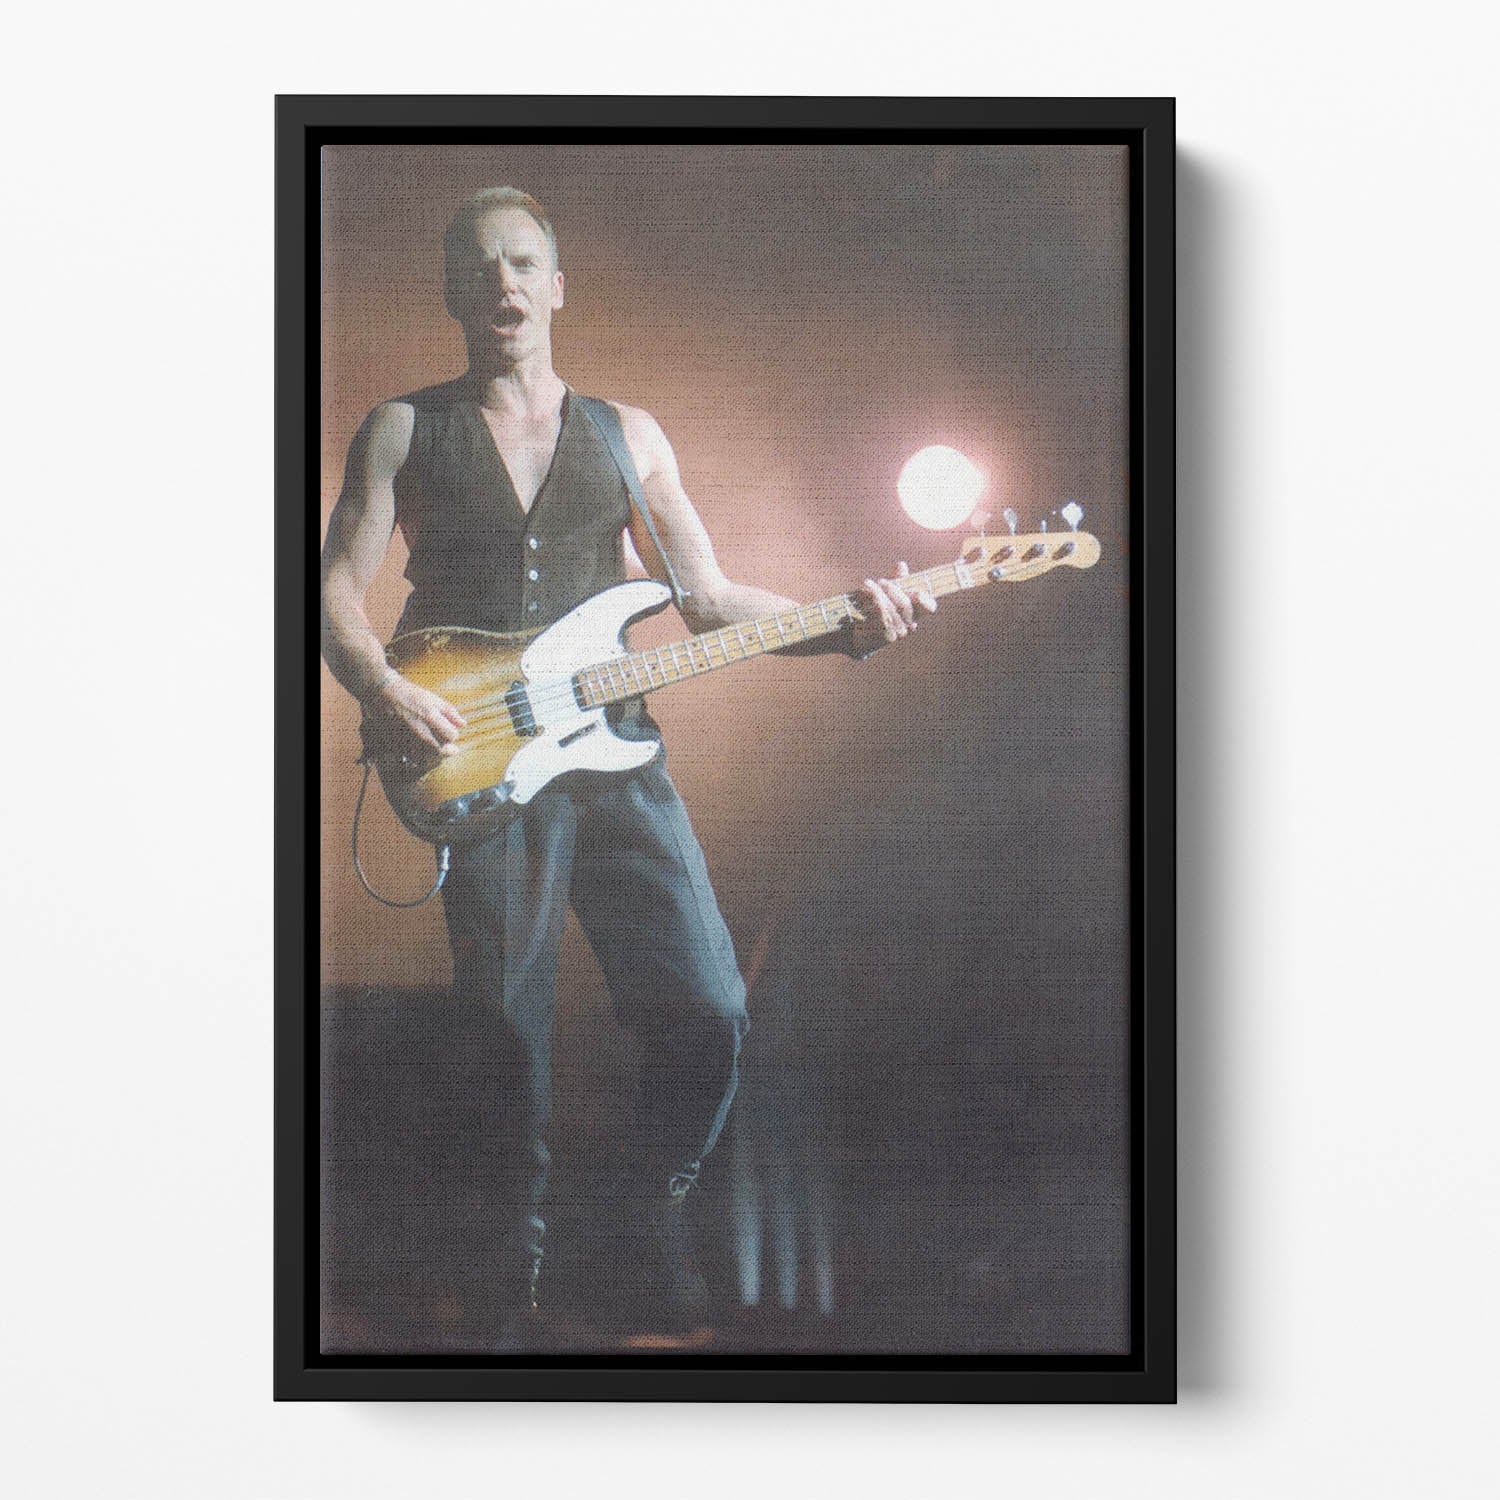 Sting in concert Floating Framed Canvas